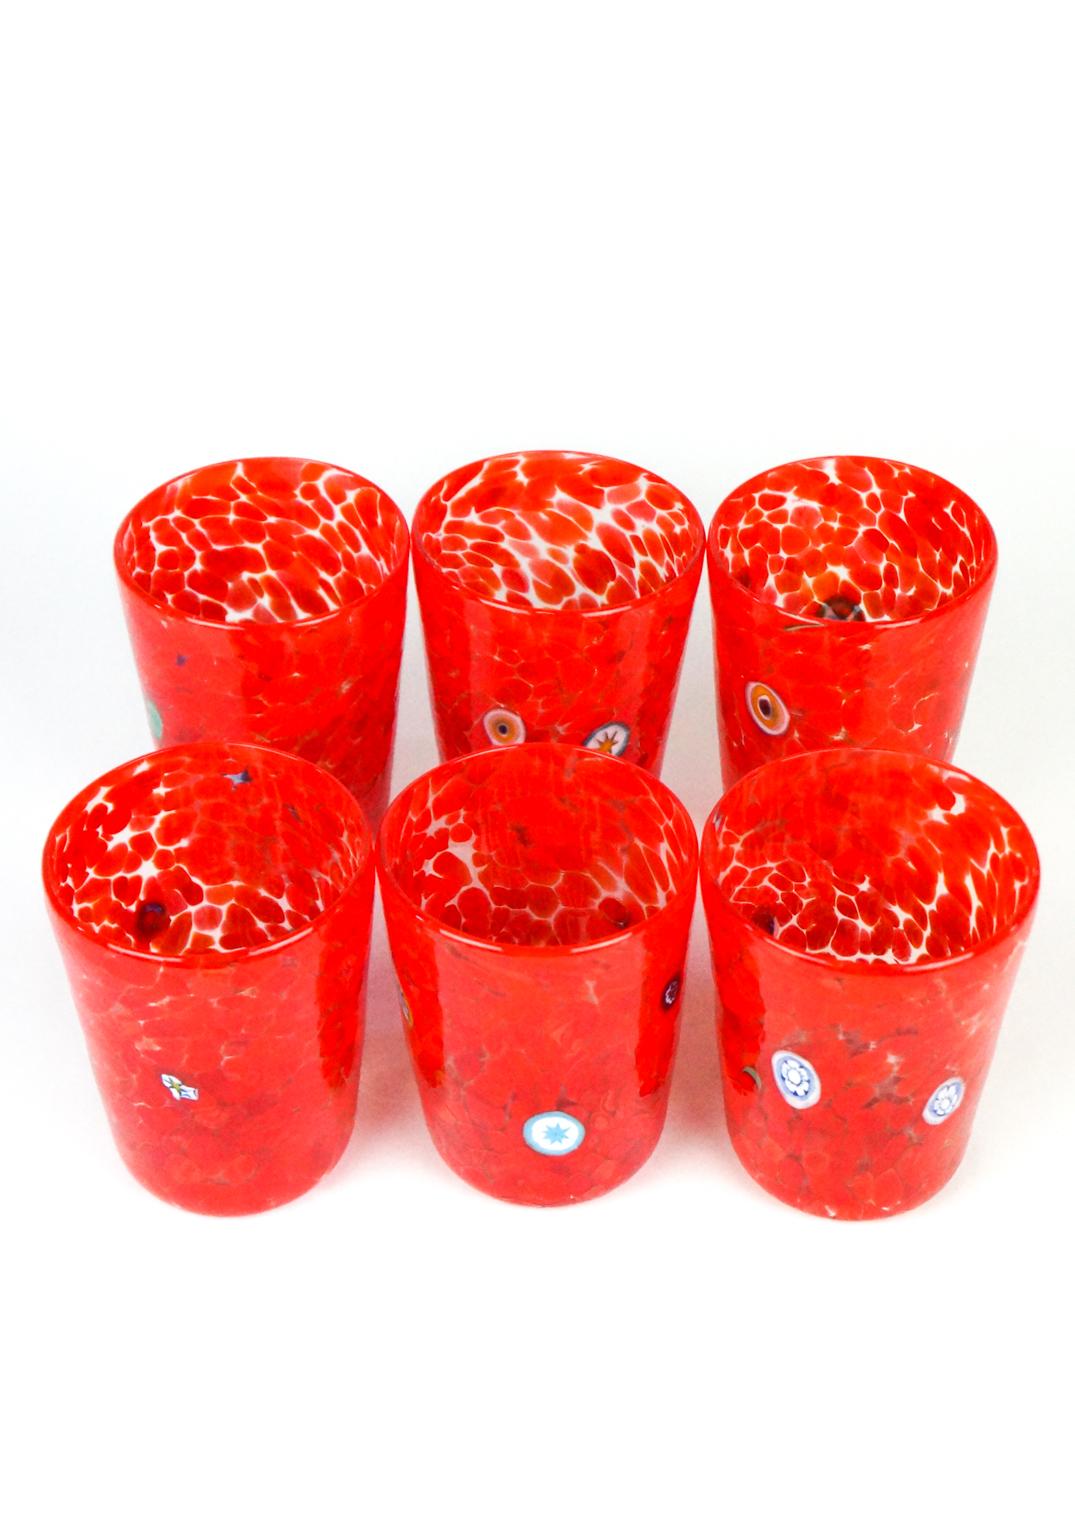 Ensemble de verres rouges avec décor de murrina Millefiori.
Cet ensemble s'appelle 